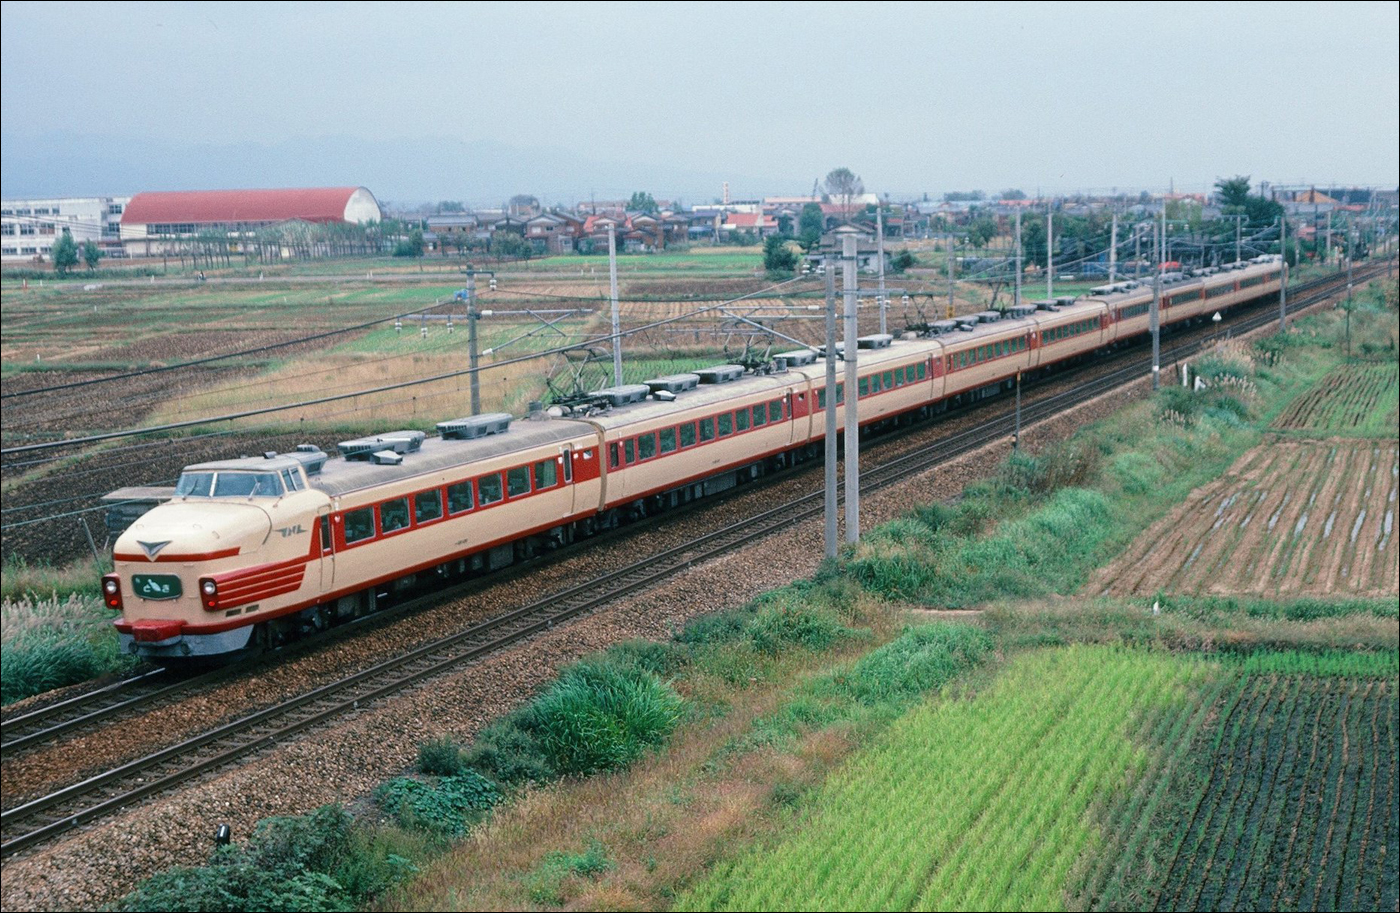 A 181-es sorozat egyik 100-as alsorozatú tagja még a Joetsu shinkansen átadása előtti Ueno - Niigata viszonylatú „Toki” gyorsvonatként Mitsuke és Obiori között 1982-ben. A shinkansenek előhírnökeként létrehozott 151/161/181-es sorozattal egészen 1982-ig utazhatott az érdeklődő, ám kialakításuknál fogva alkalmatlanok voltak a jövőbeni fejlesztésekhez. (Fotó: Maeda Tsutsumu)